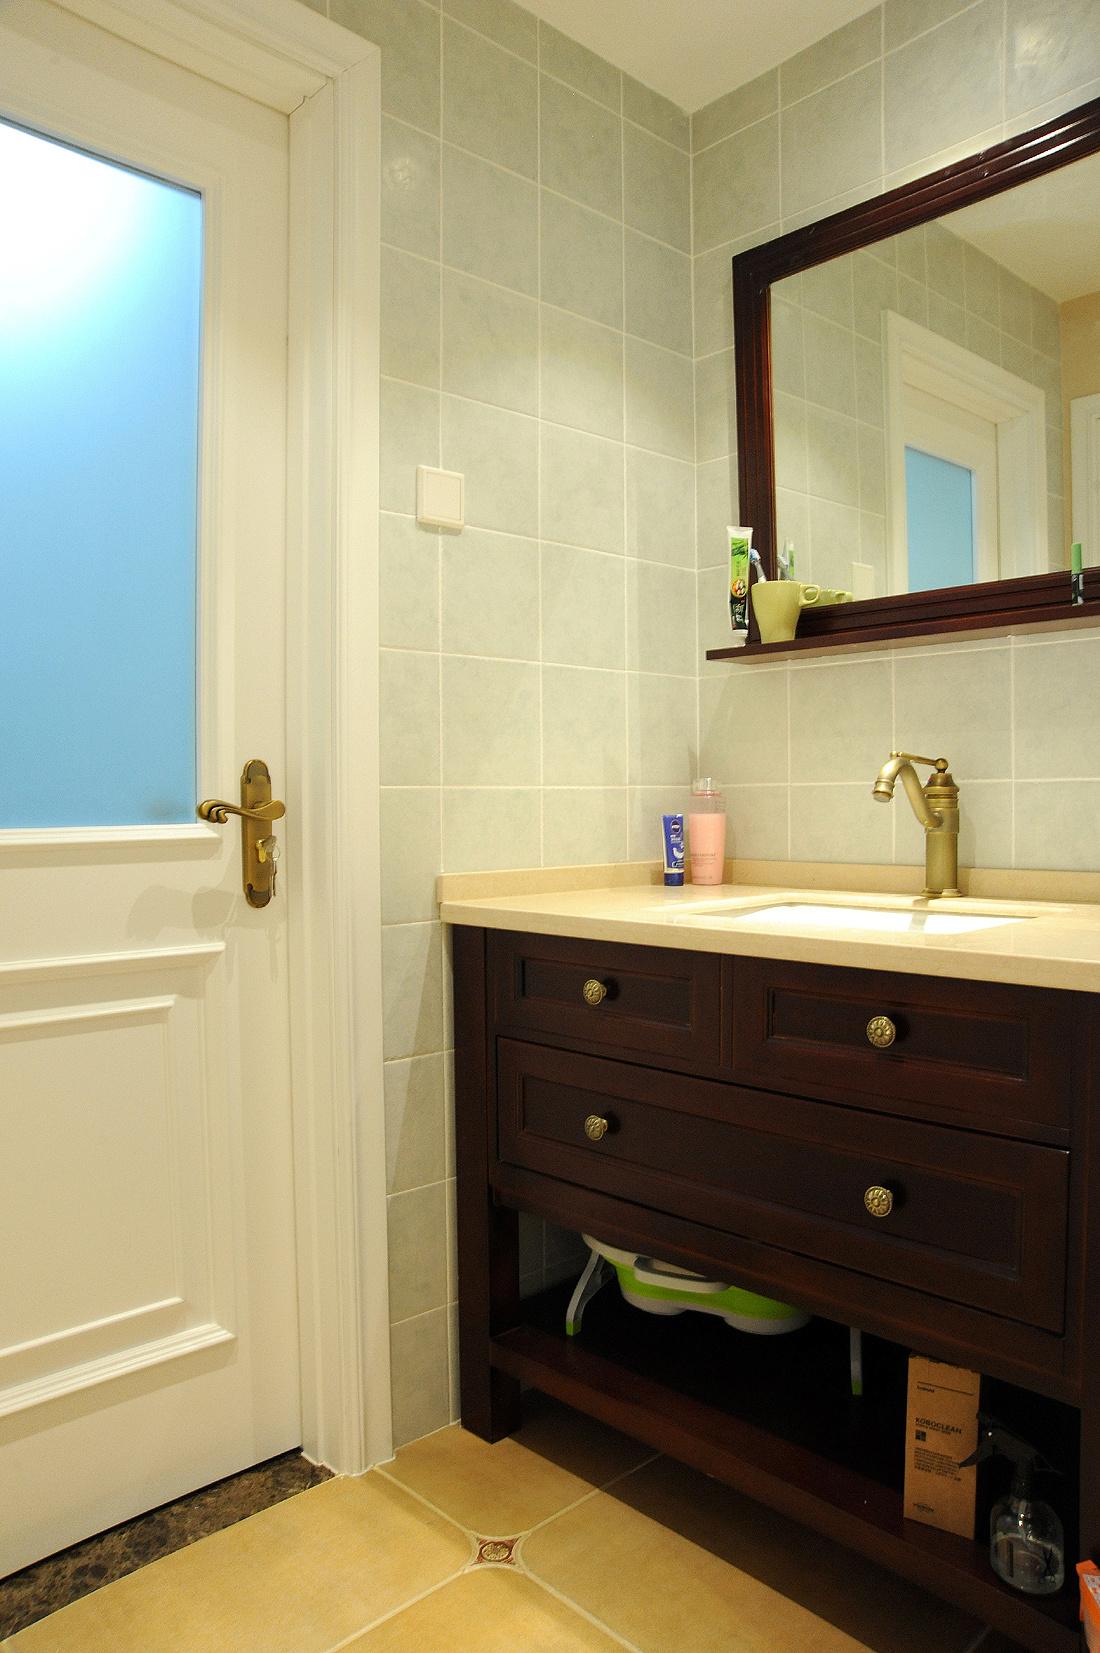 厕所 家居 设计 卫生间 卫生间装修 装修 1100_1653 竖版 竖屏